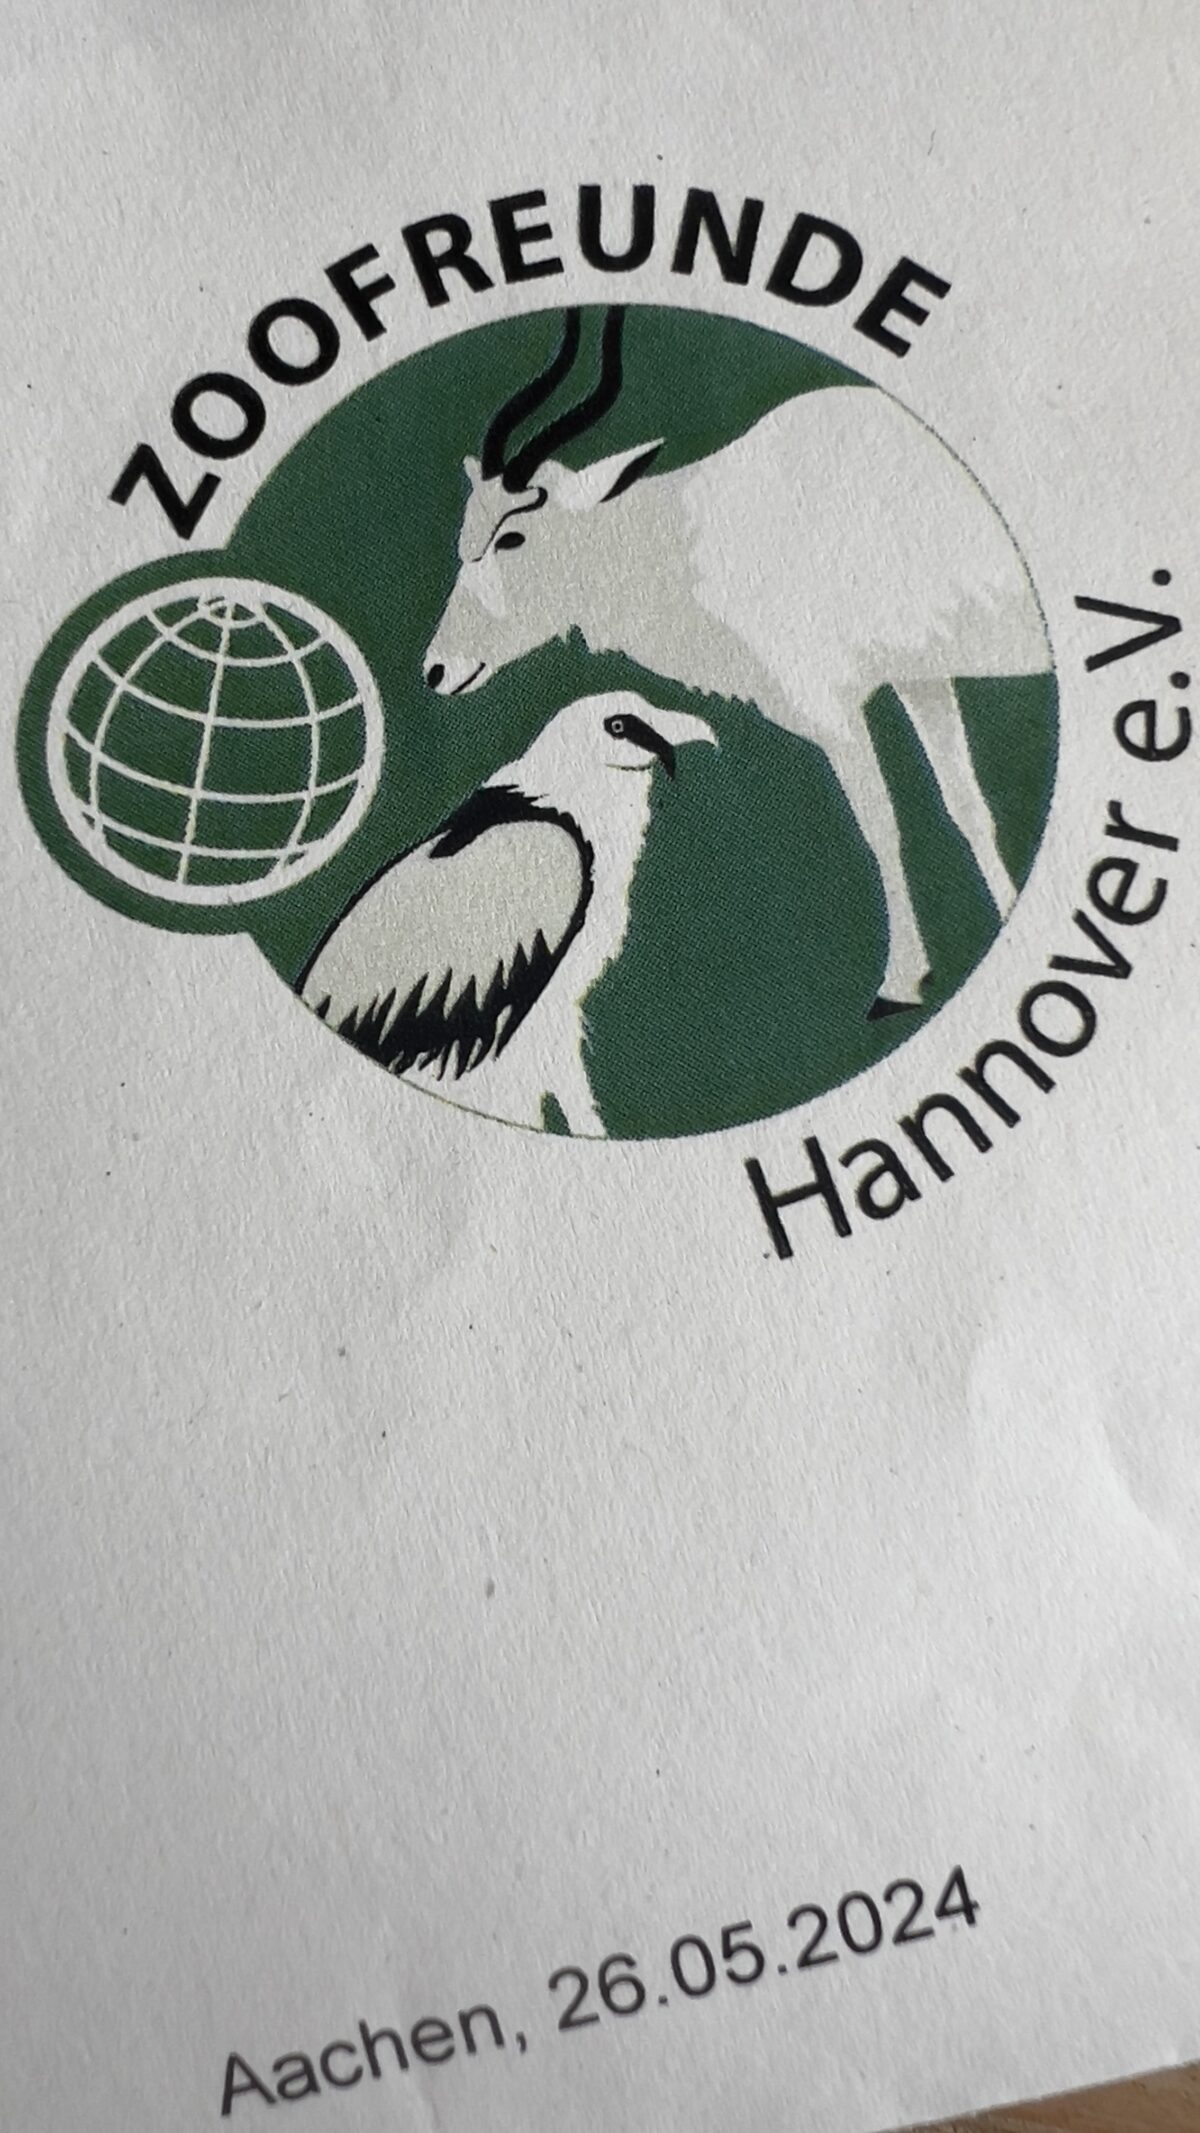 Lieber Besuch aus Hannover